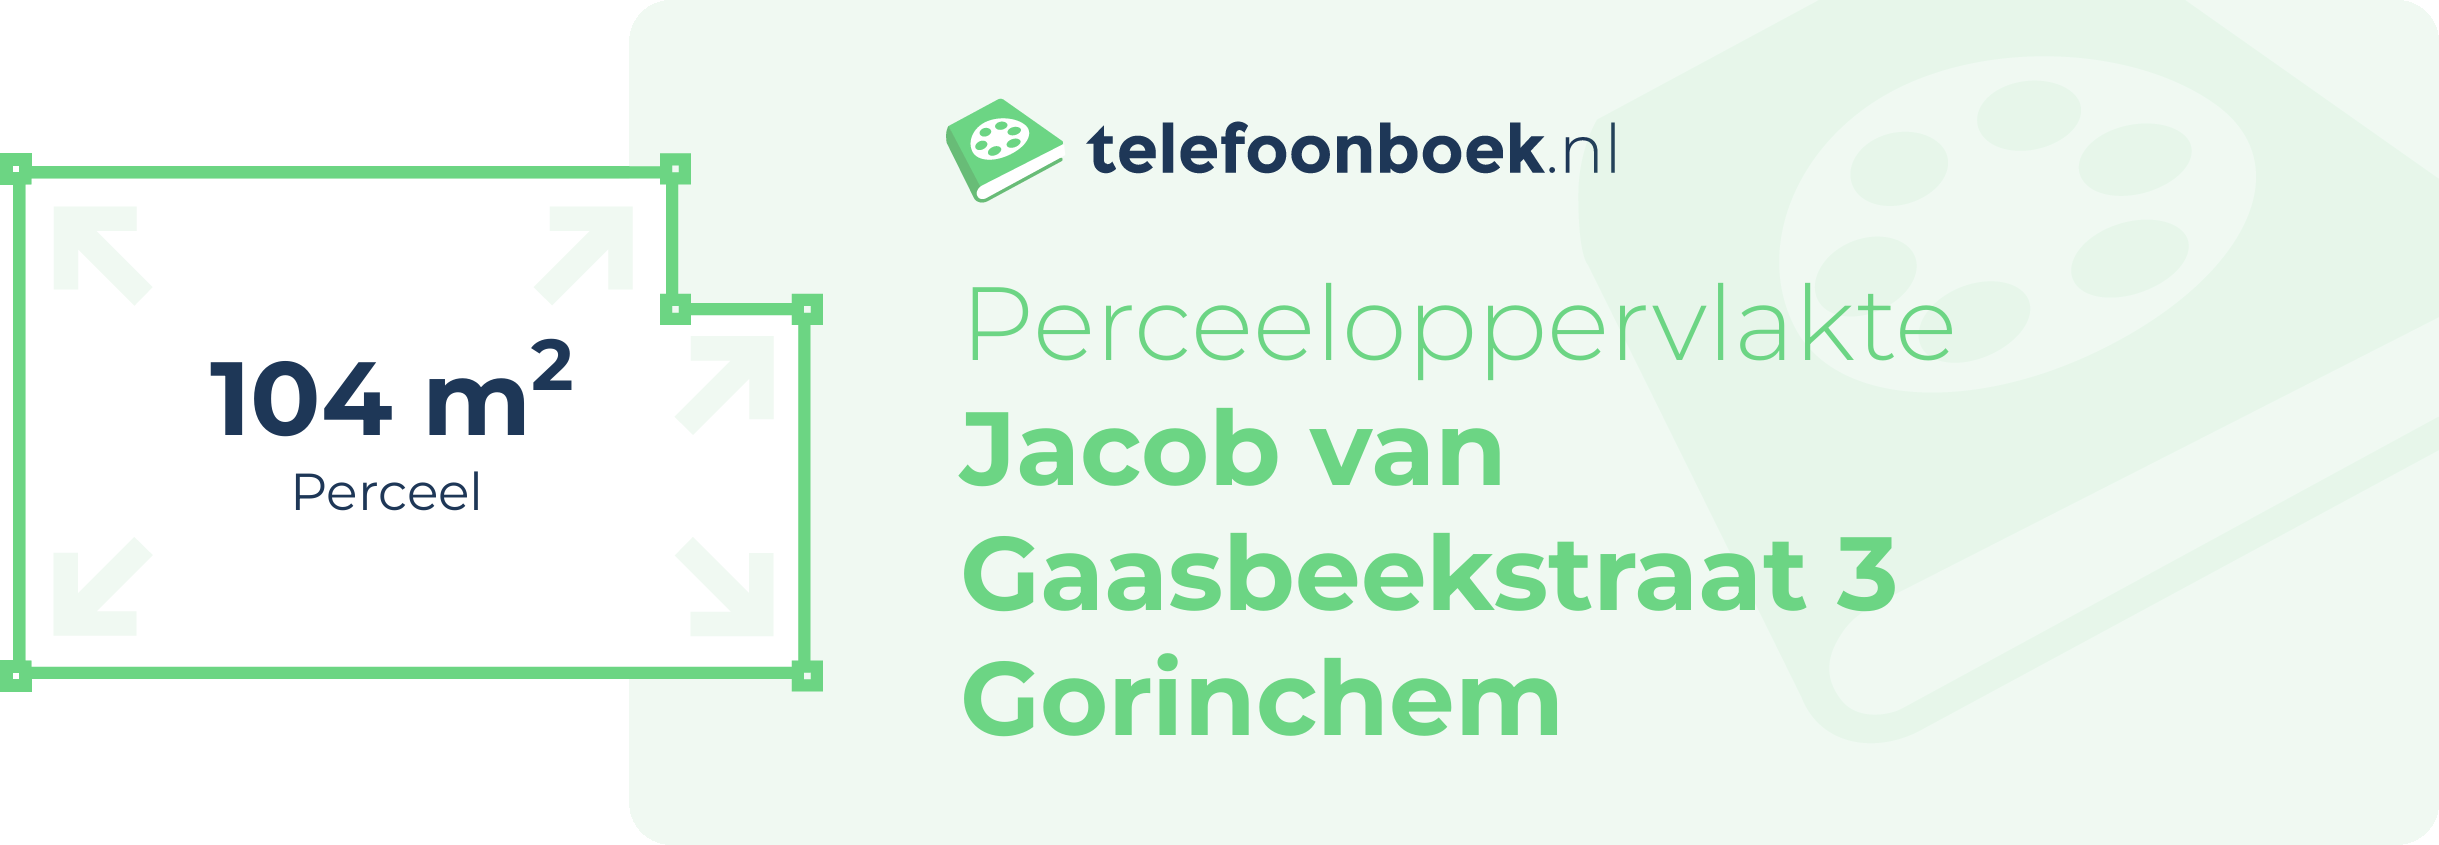 Perceeloppervlakte Jacob Van Gaasbeekstraat 3 Gorinchem